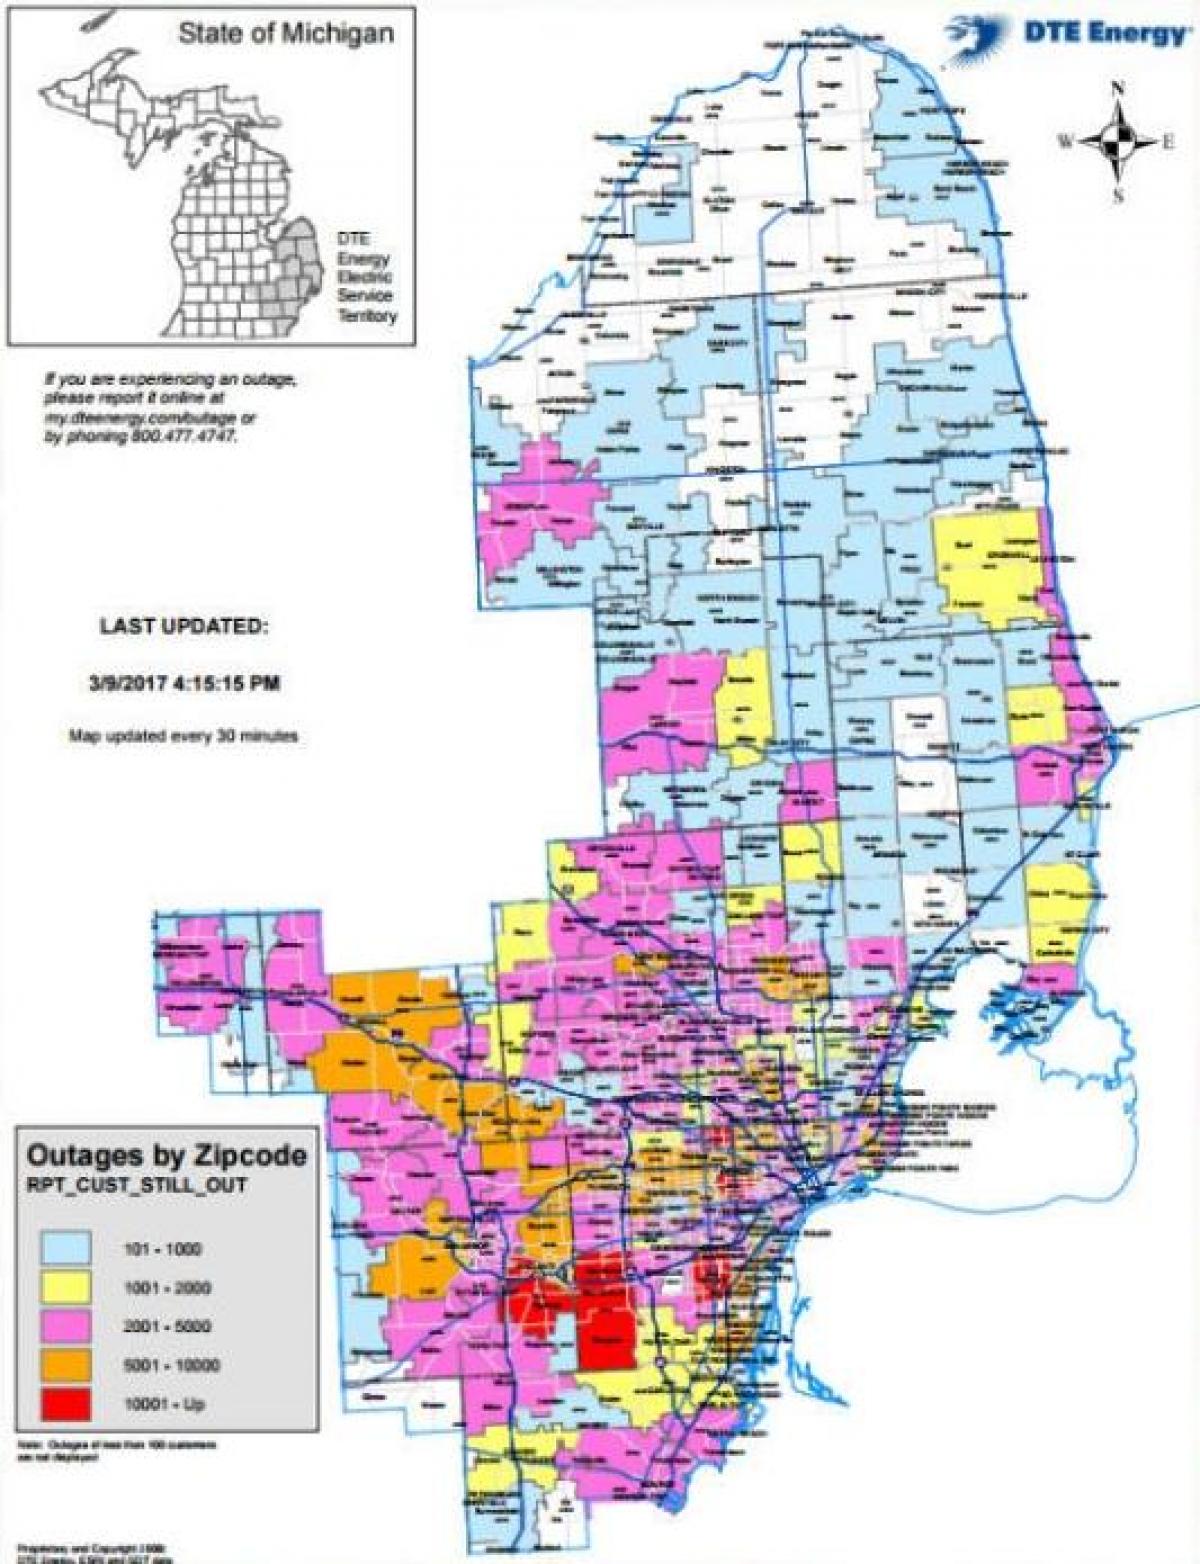 Detroit edison sähkökatkos kartta